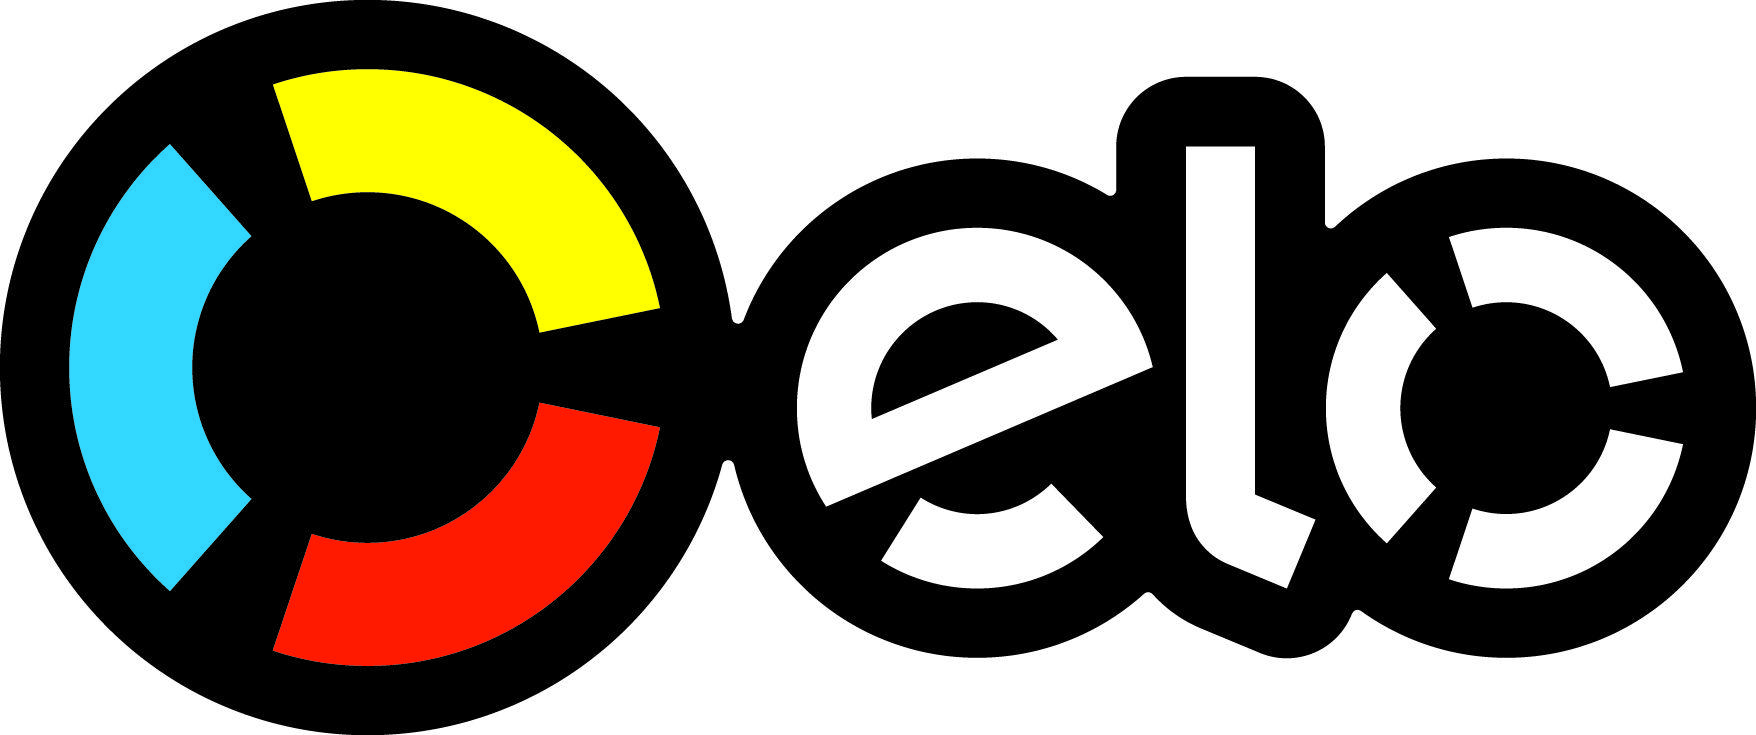 Elo Logo - Elo Logos